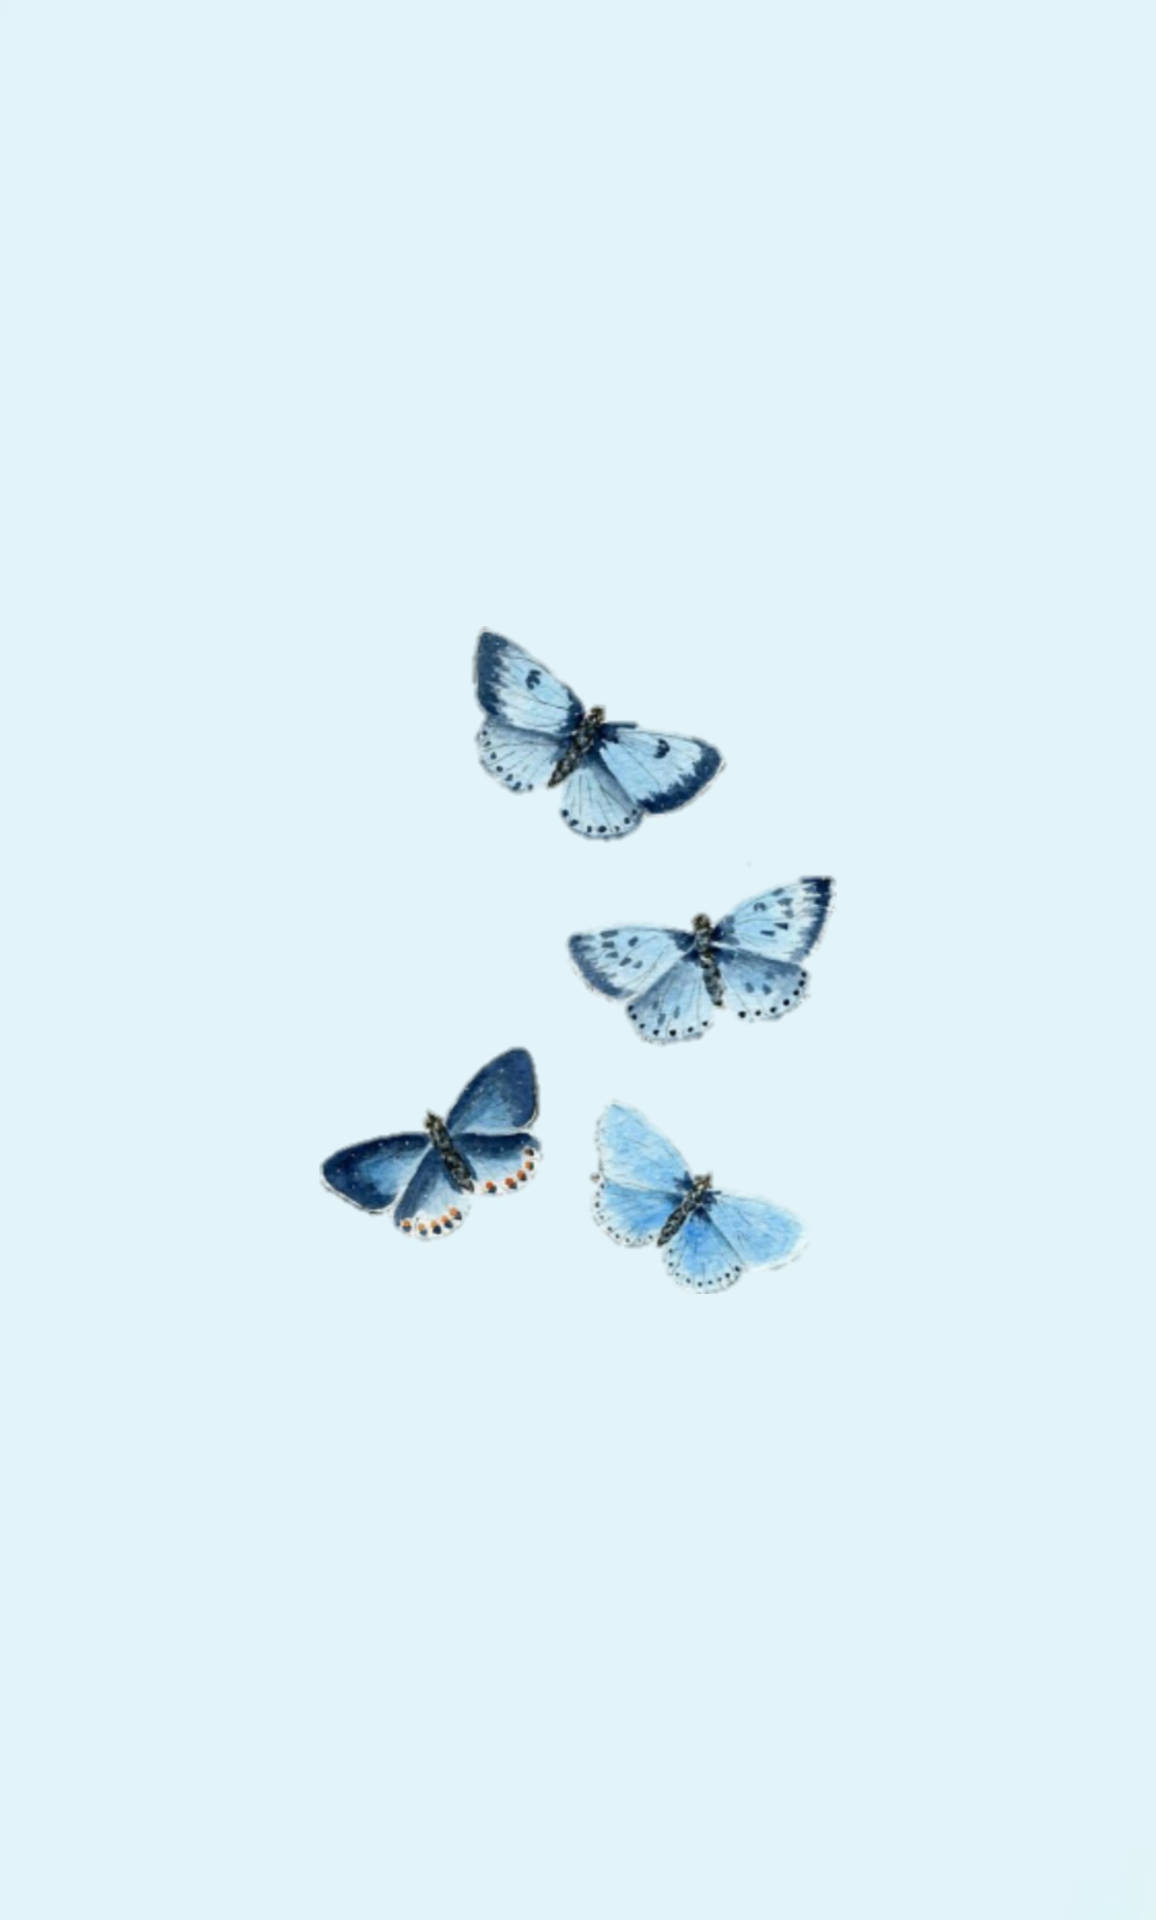 Butterfly Aesthetic Powder Blue Wings Wallpaper